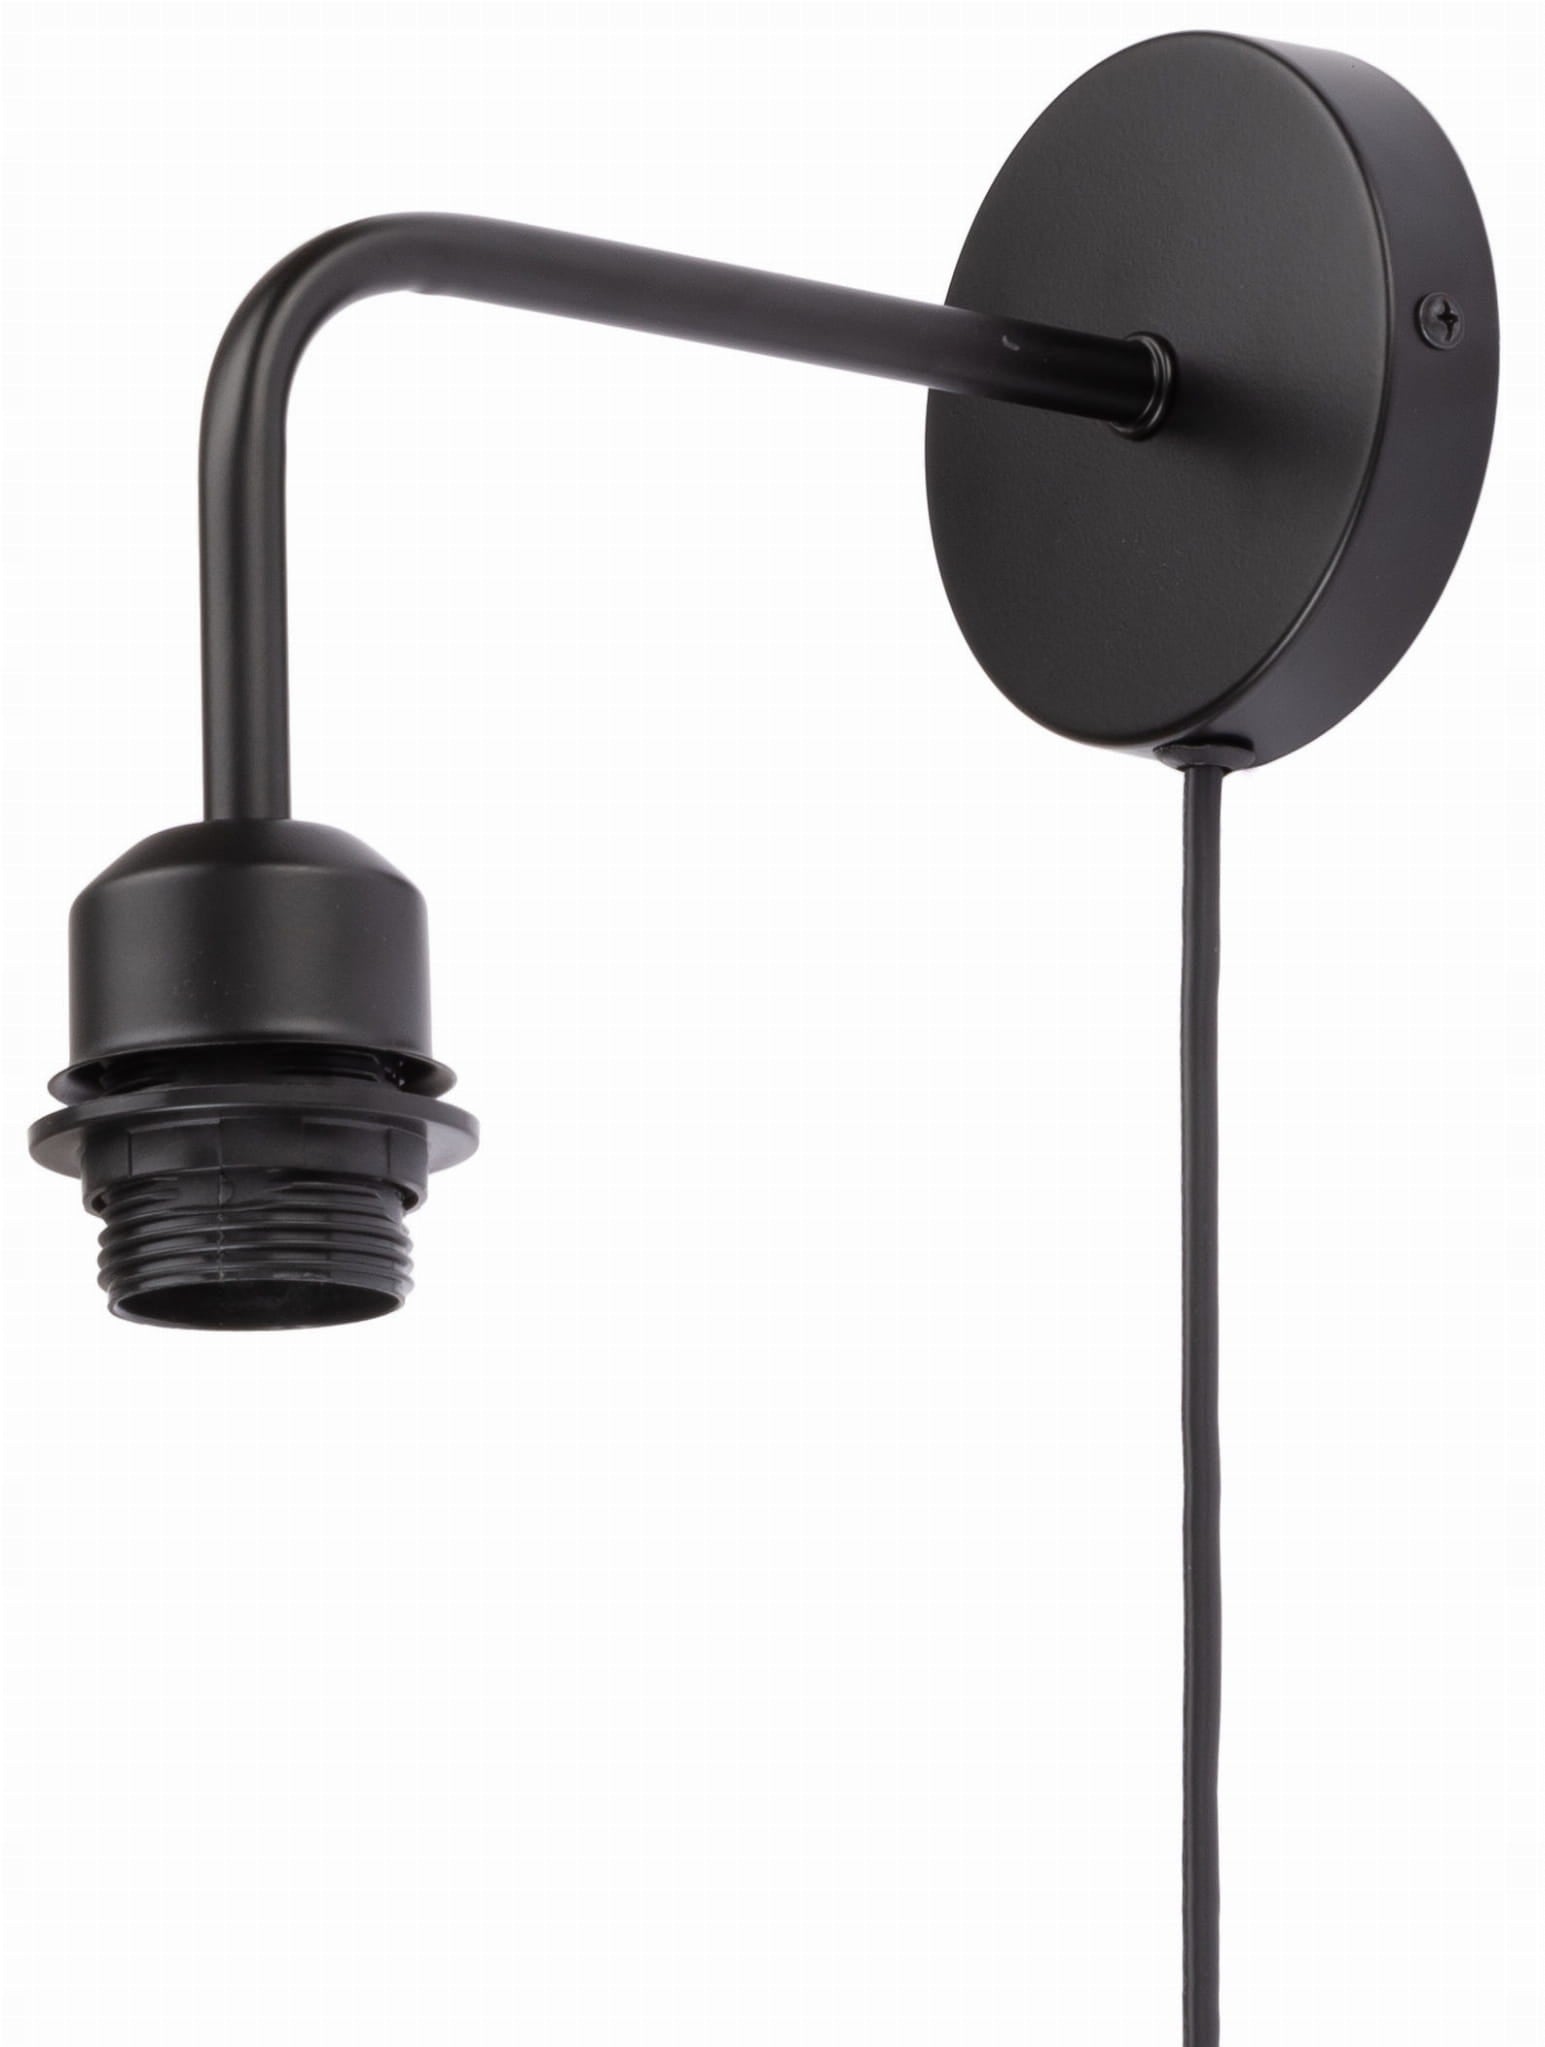 Vegglampe i metall med svart ramme og ledning